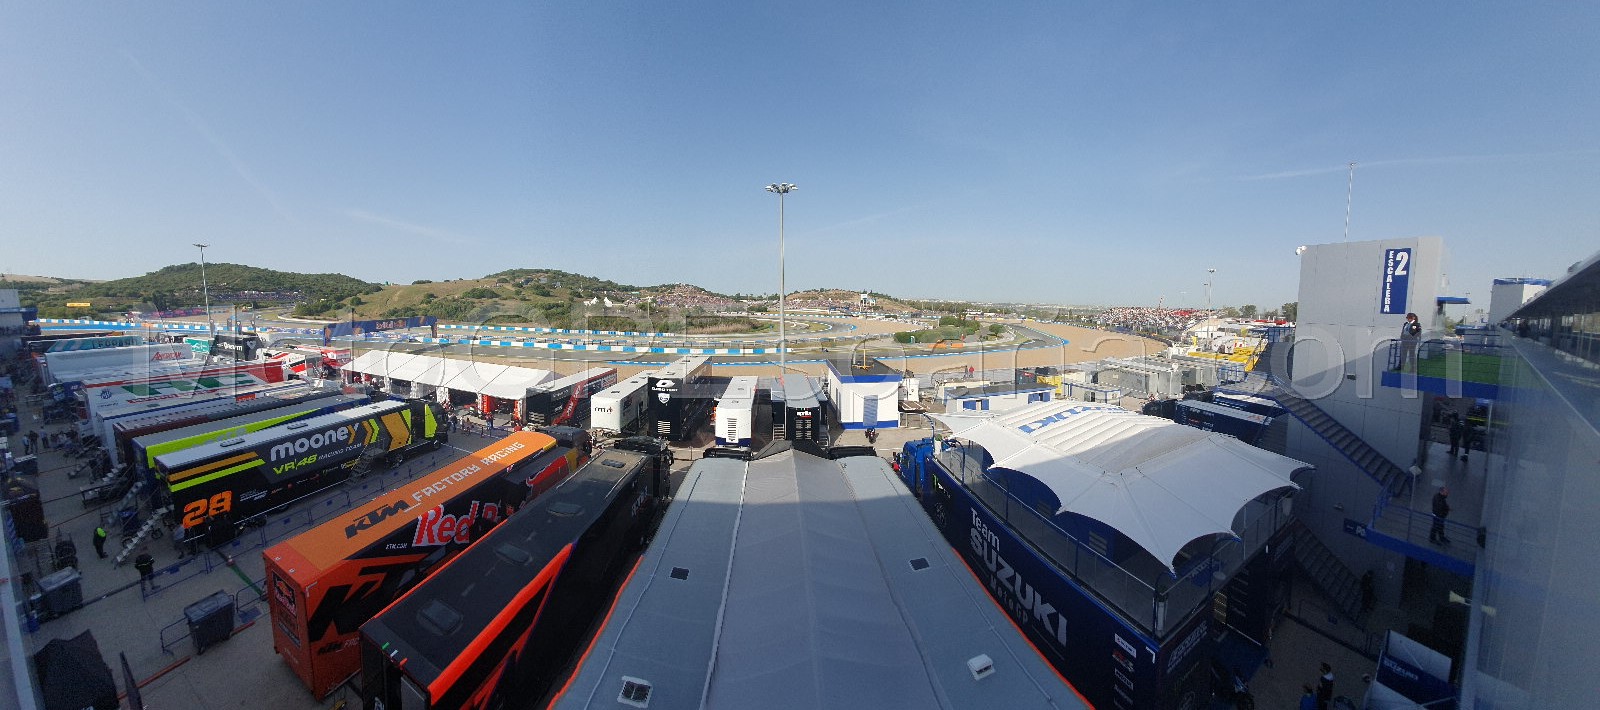 Espacios VIP con vistas privilegiadas sobre el Circuito de Jerez-Angel Nieto